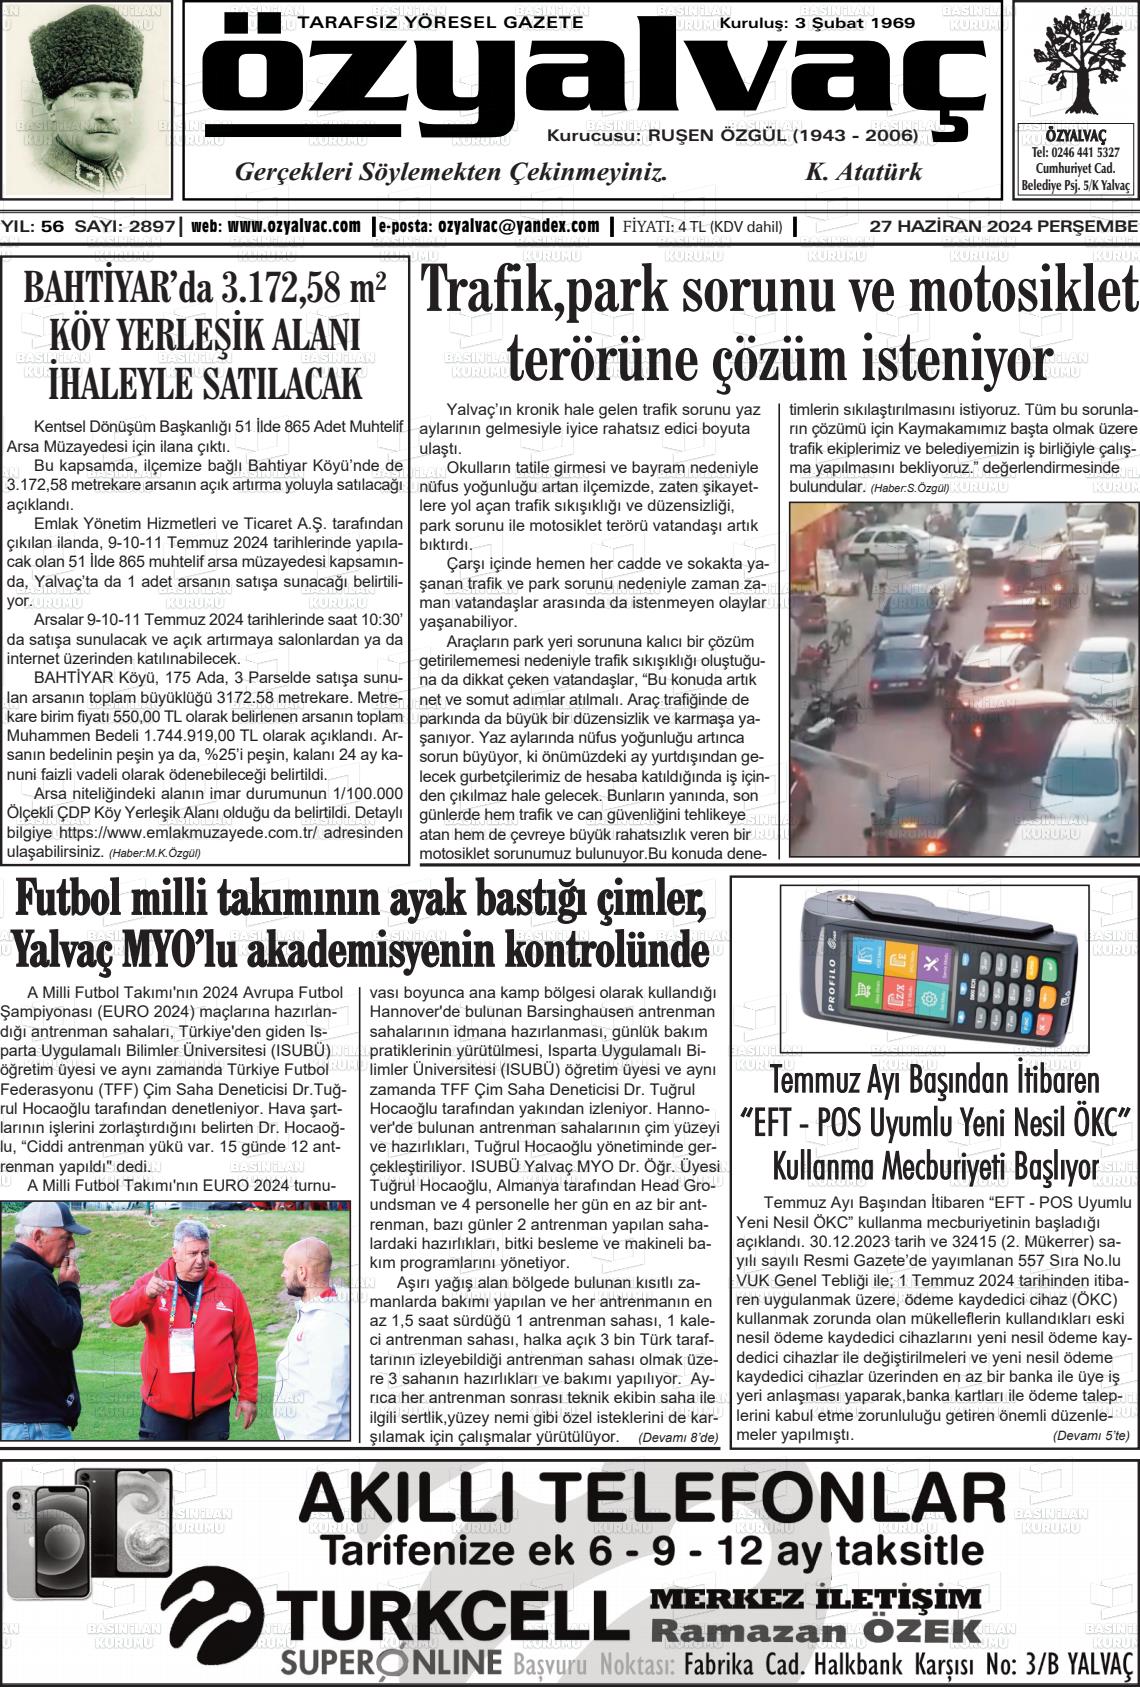 ÖZ YALVAÇ Gazetesi